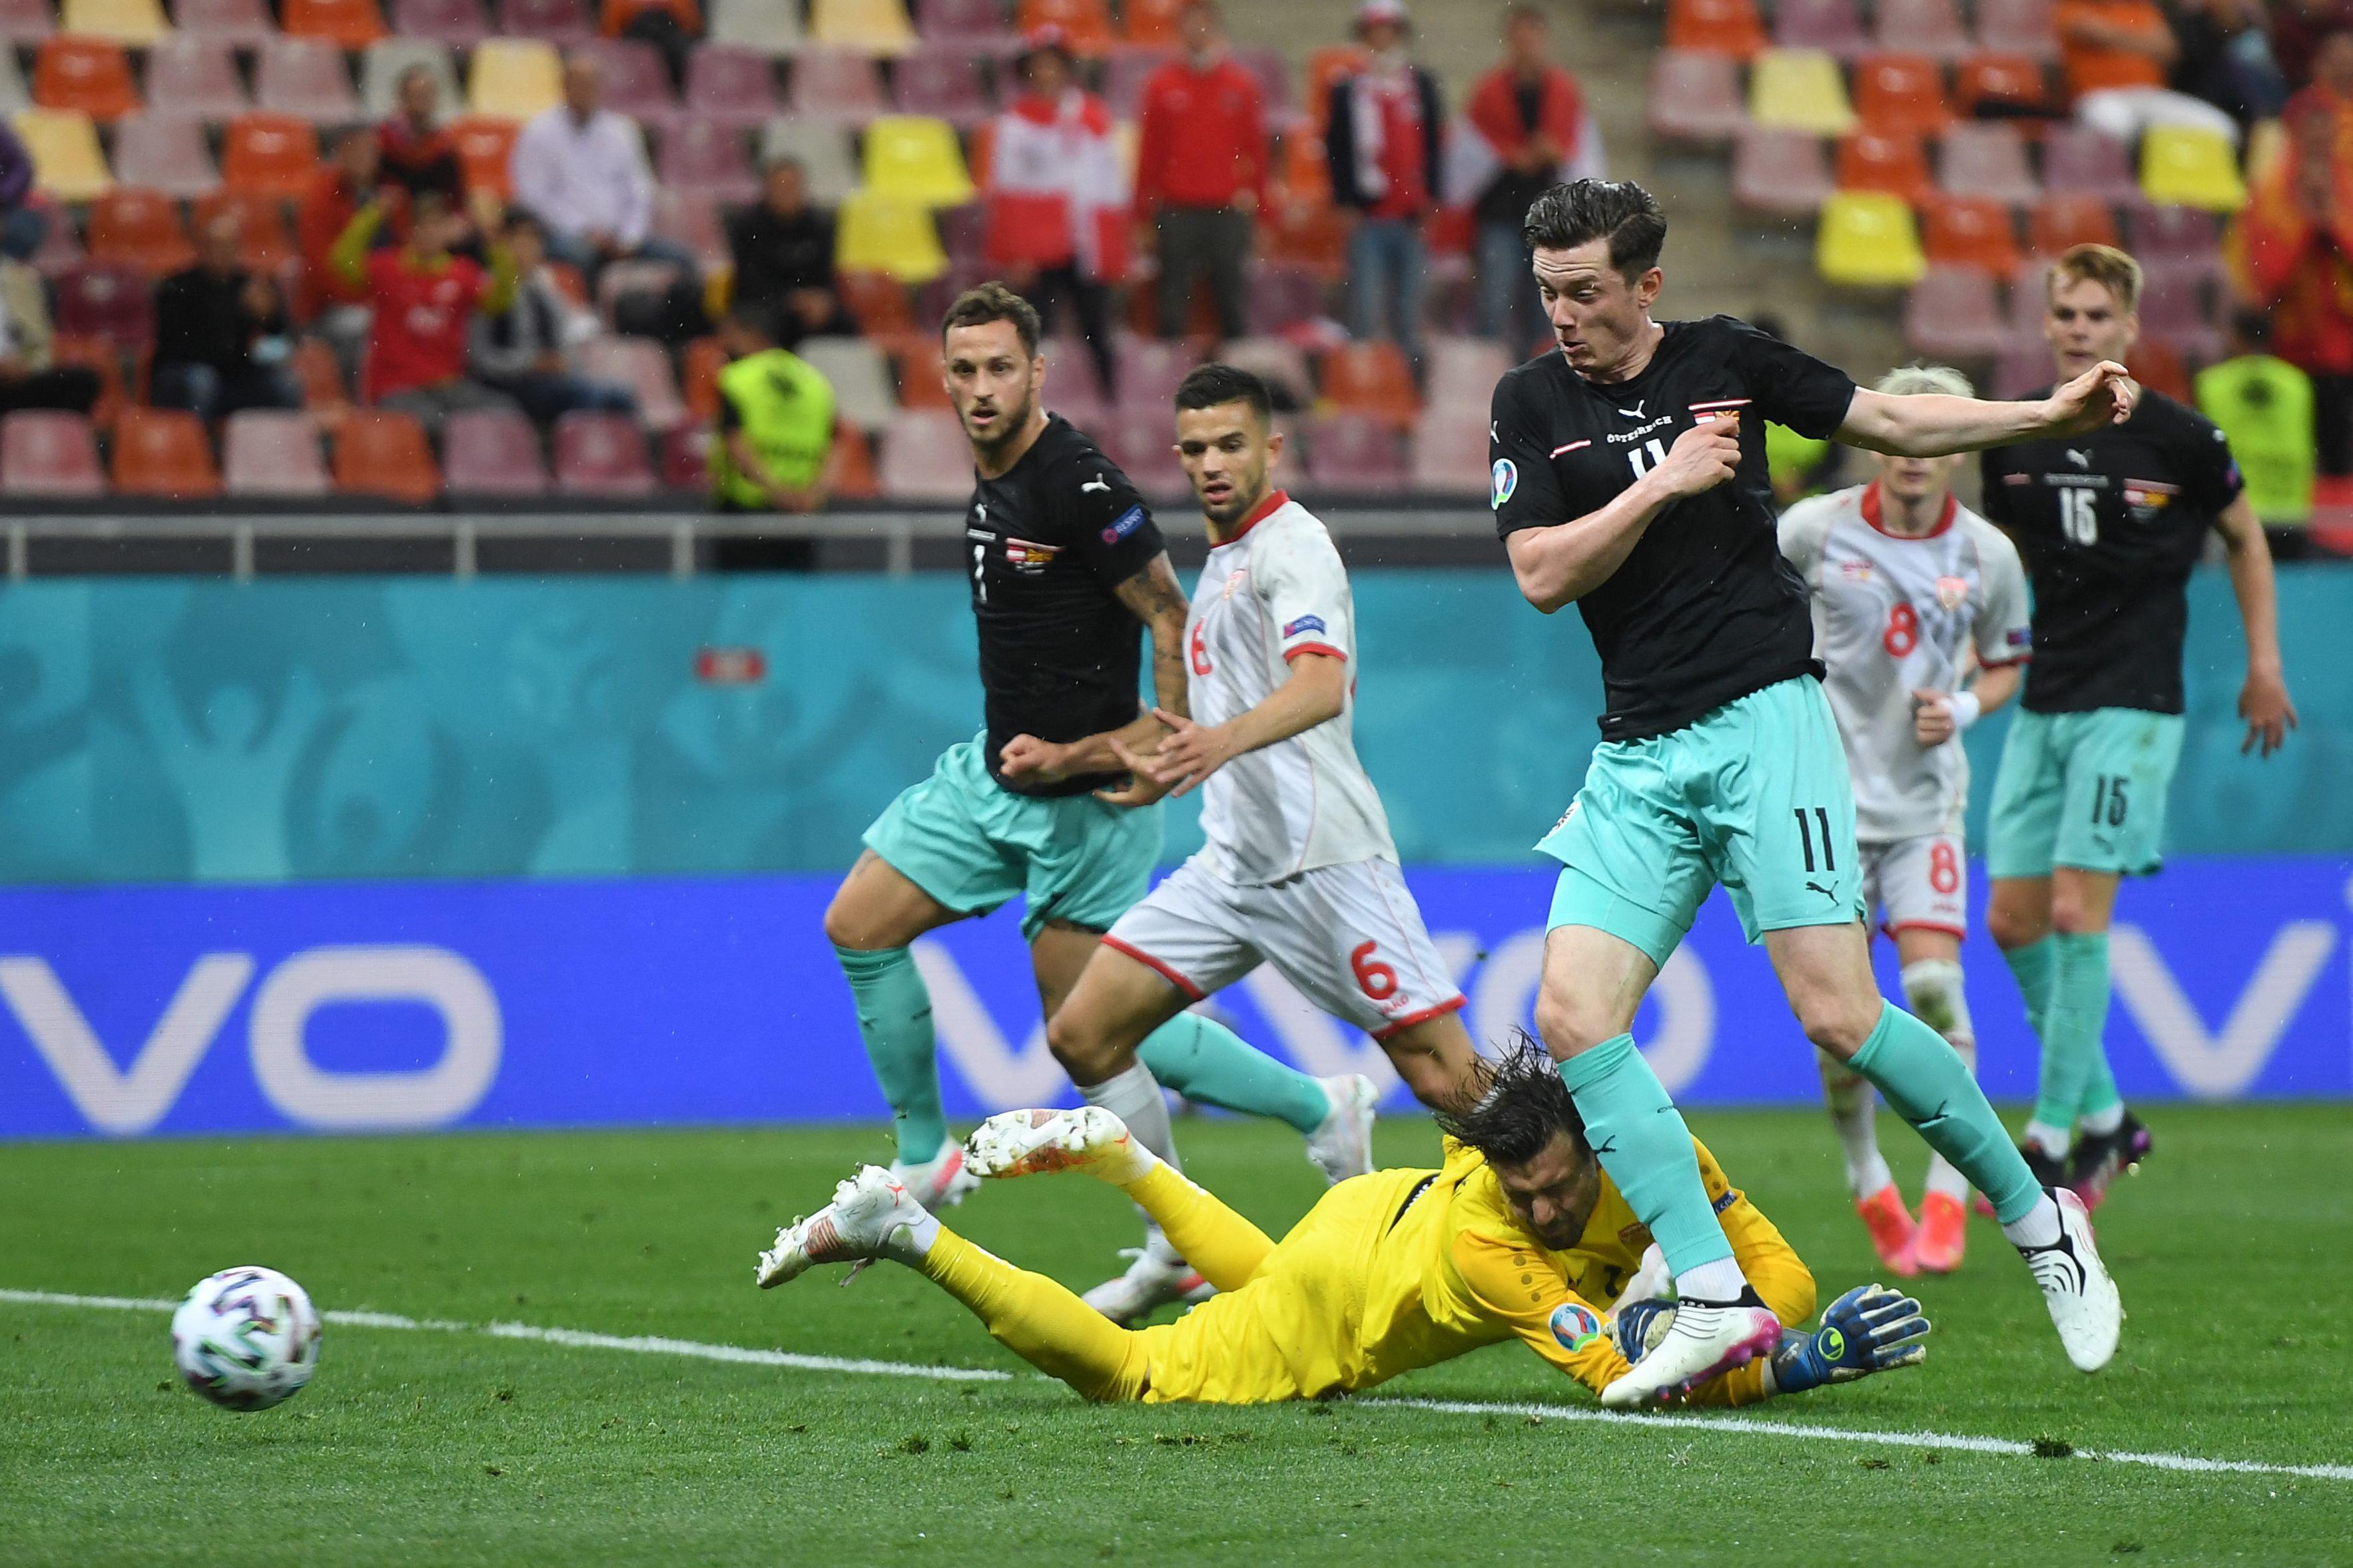 (ÖZET) EURO 2020 Avusturya - Kuzey Makedonya maç sonucu: 3-1